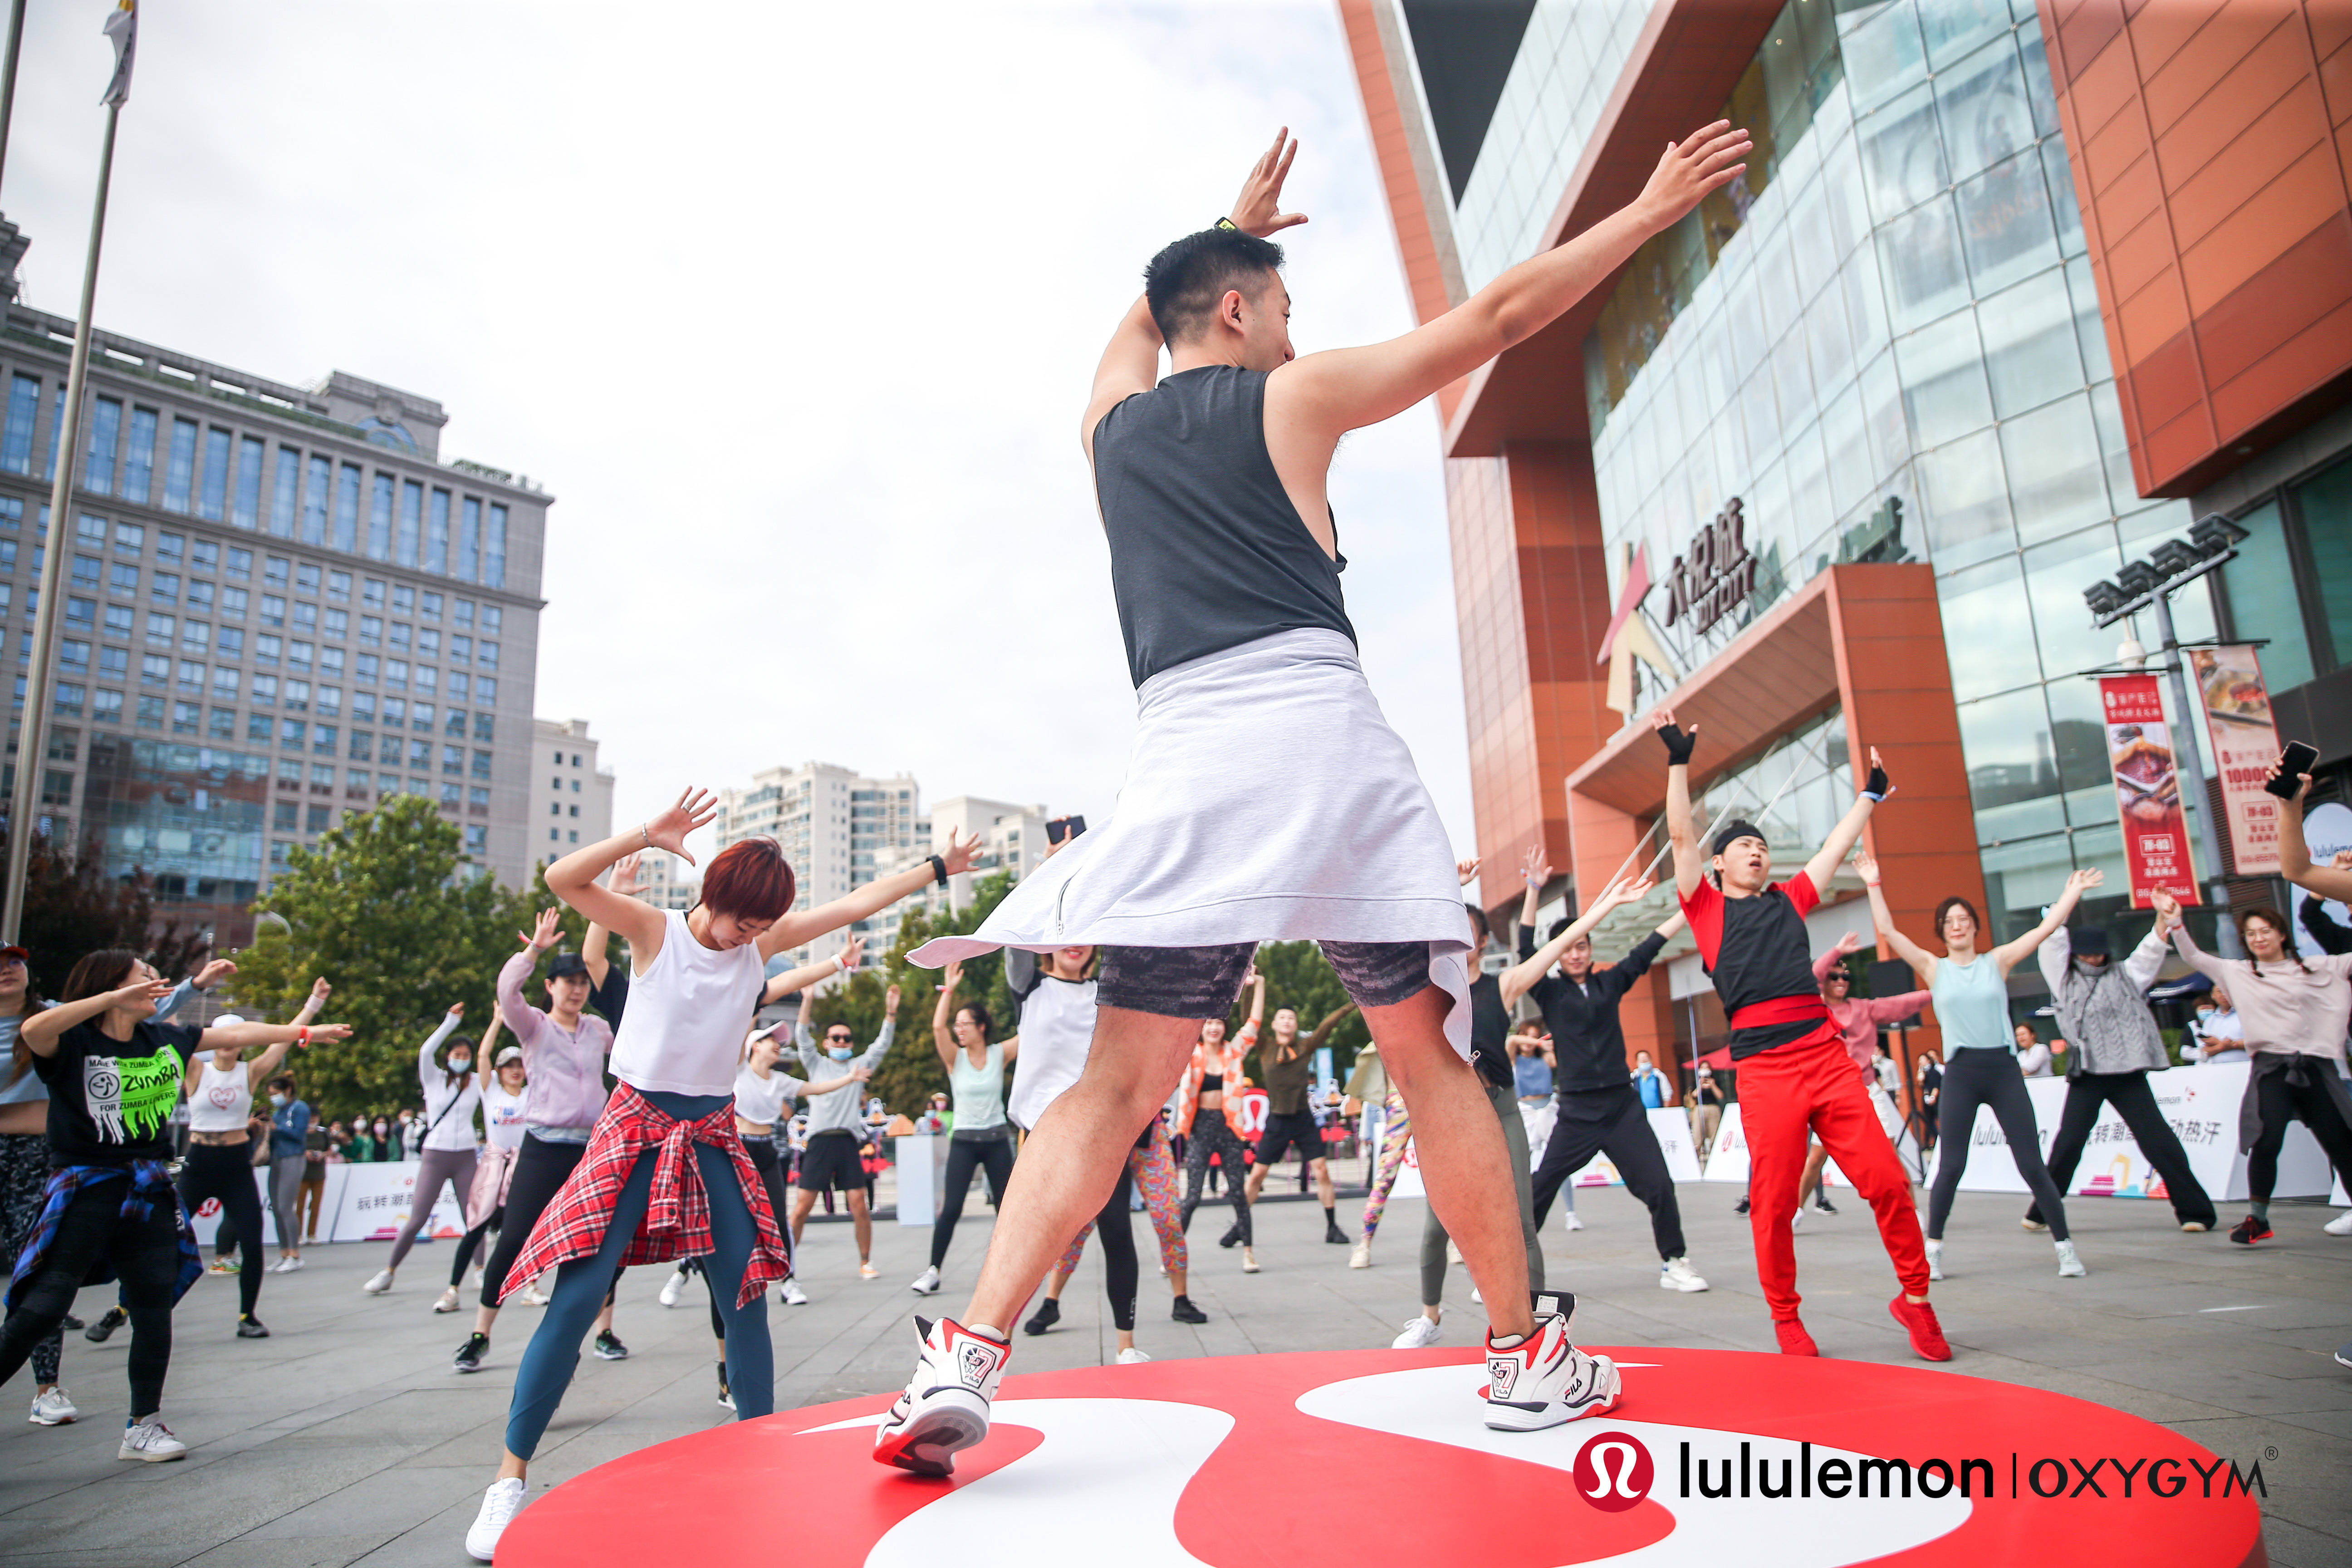 2020年9月30日,北京——运动生活方式品牌lululemon于北京朝阳大悦 